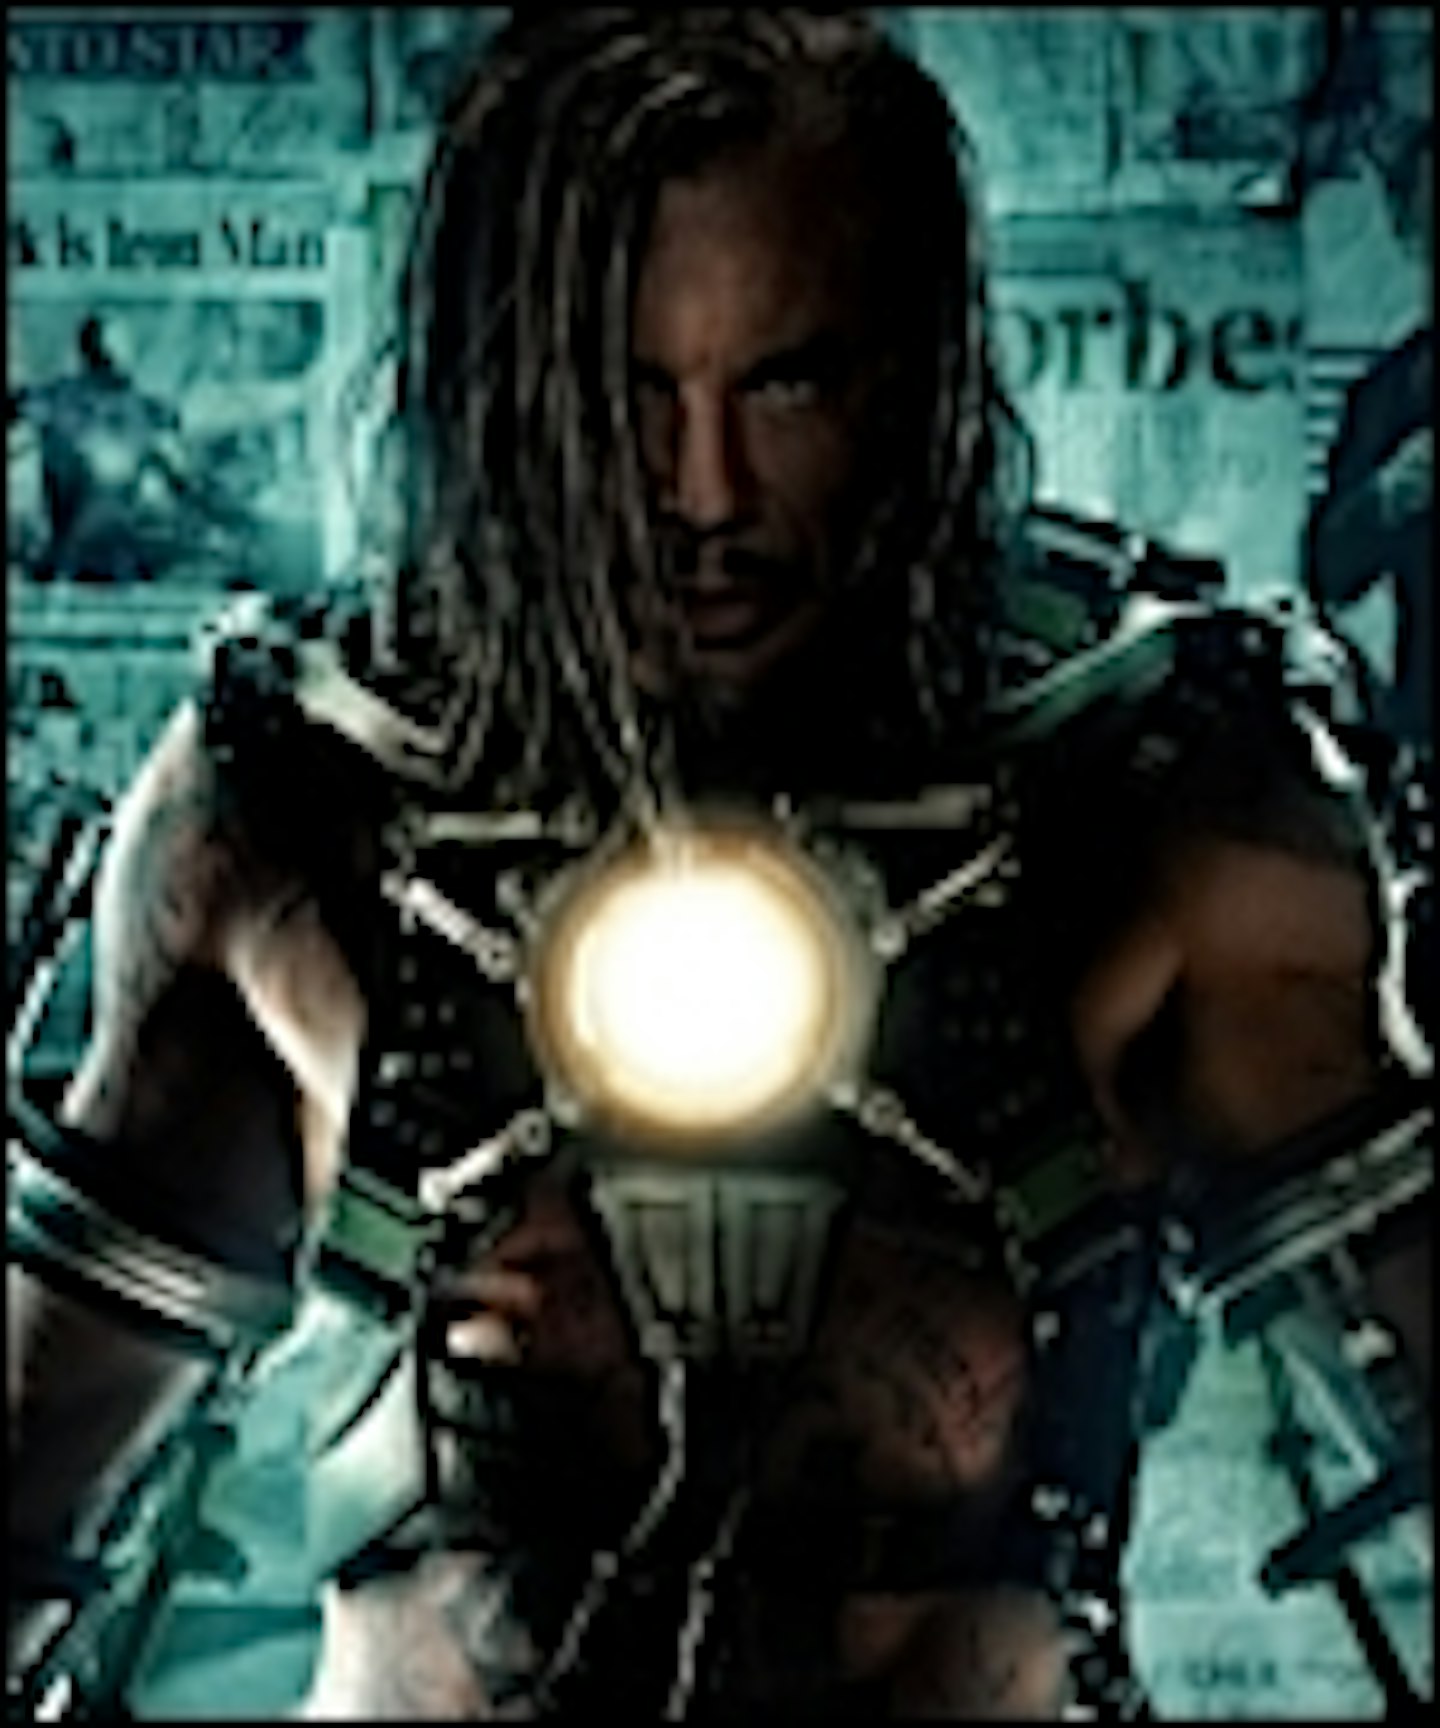 Iron Man 2 Whiplash Poster Hits